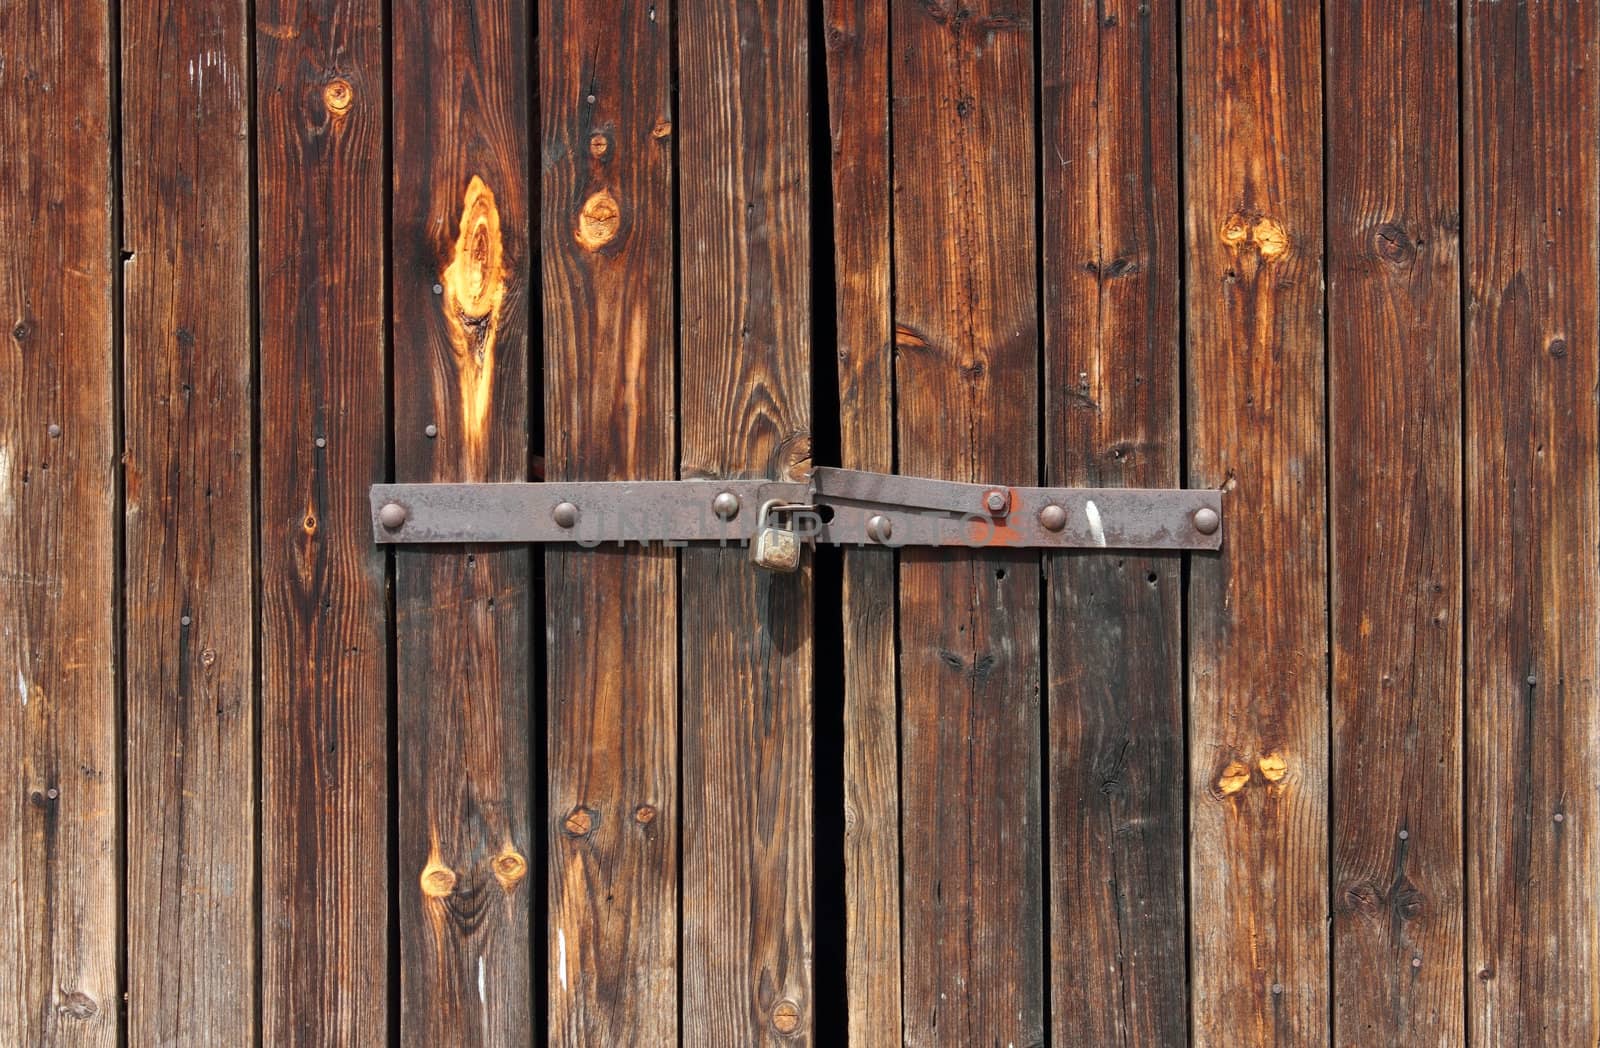 Old Wooden door locked with rusty padlock background.